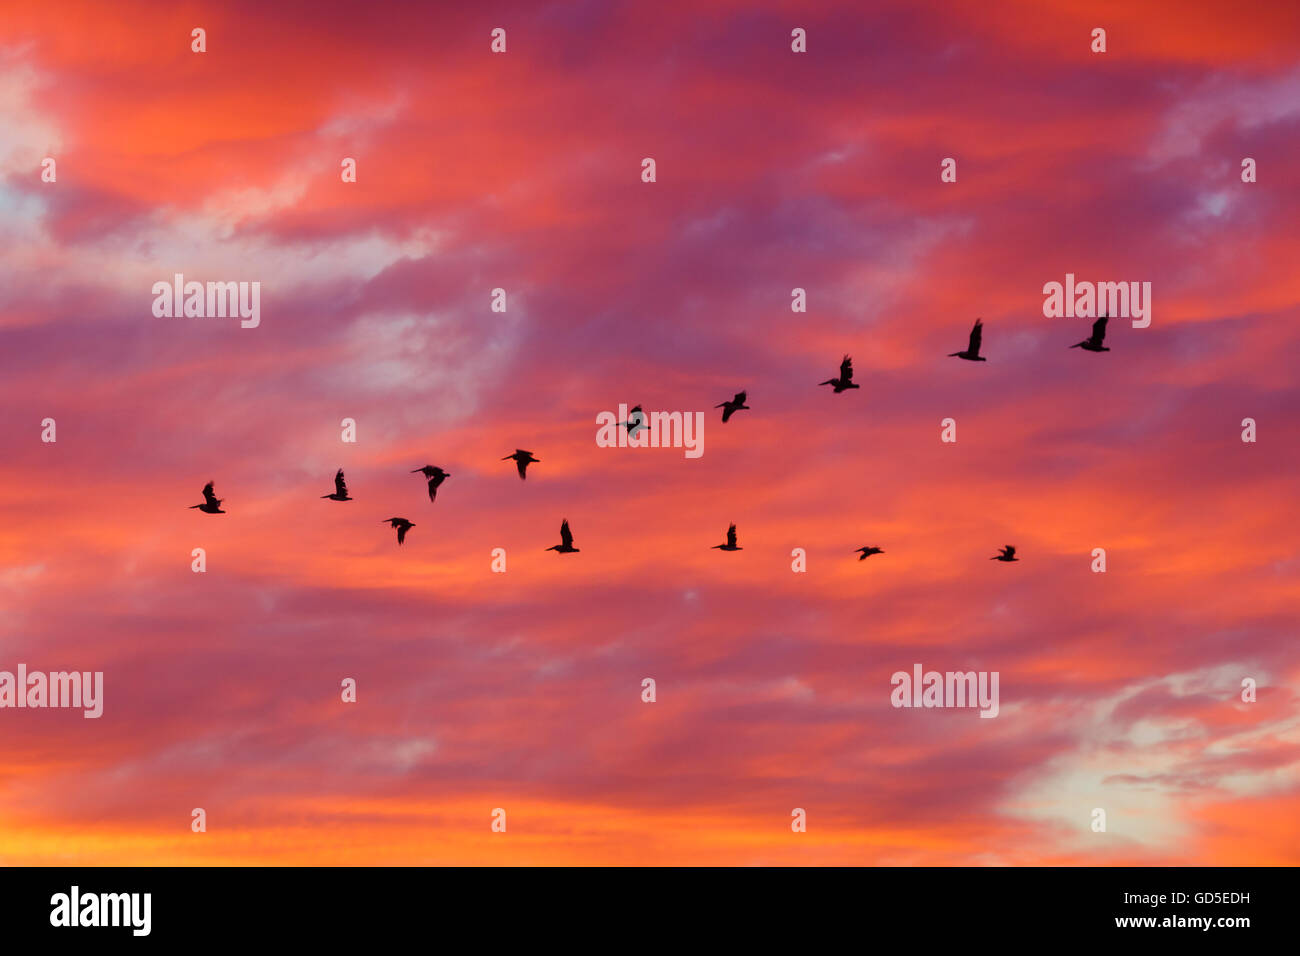 Sillhoutte d'oiseaux volant en formation avec les nuages spectaculaires au coucher du soleil Banque D'Images